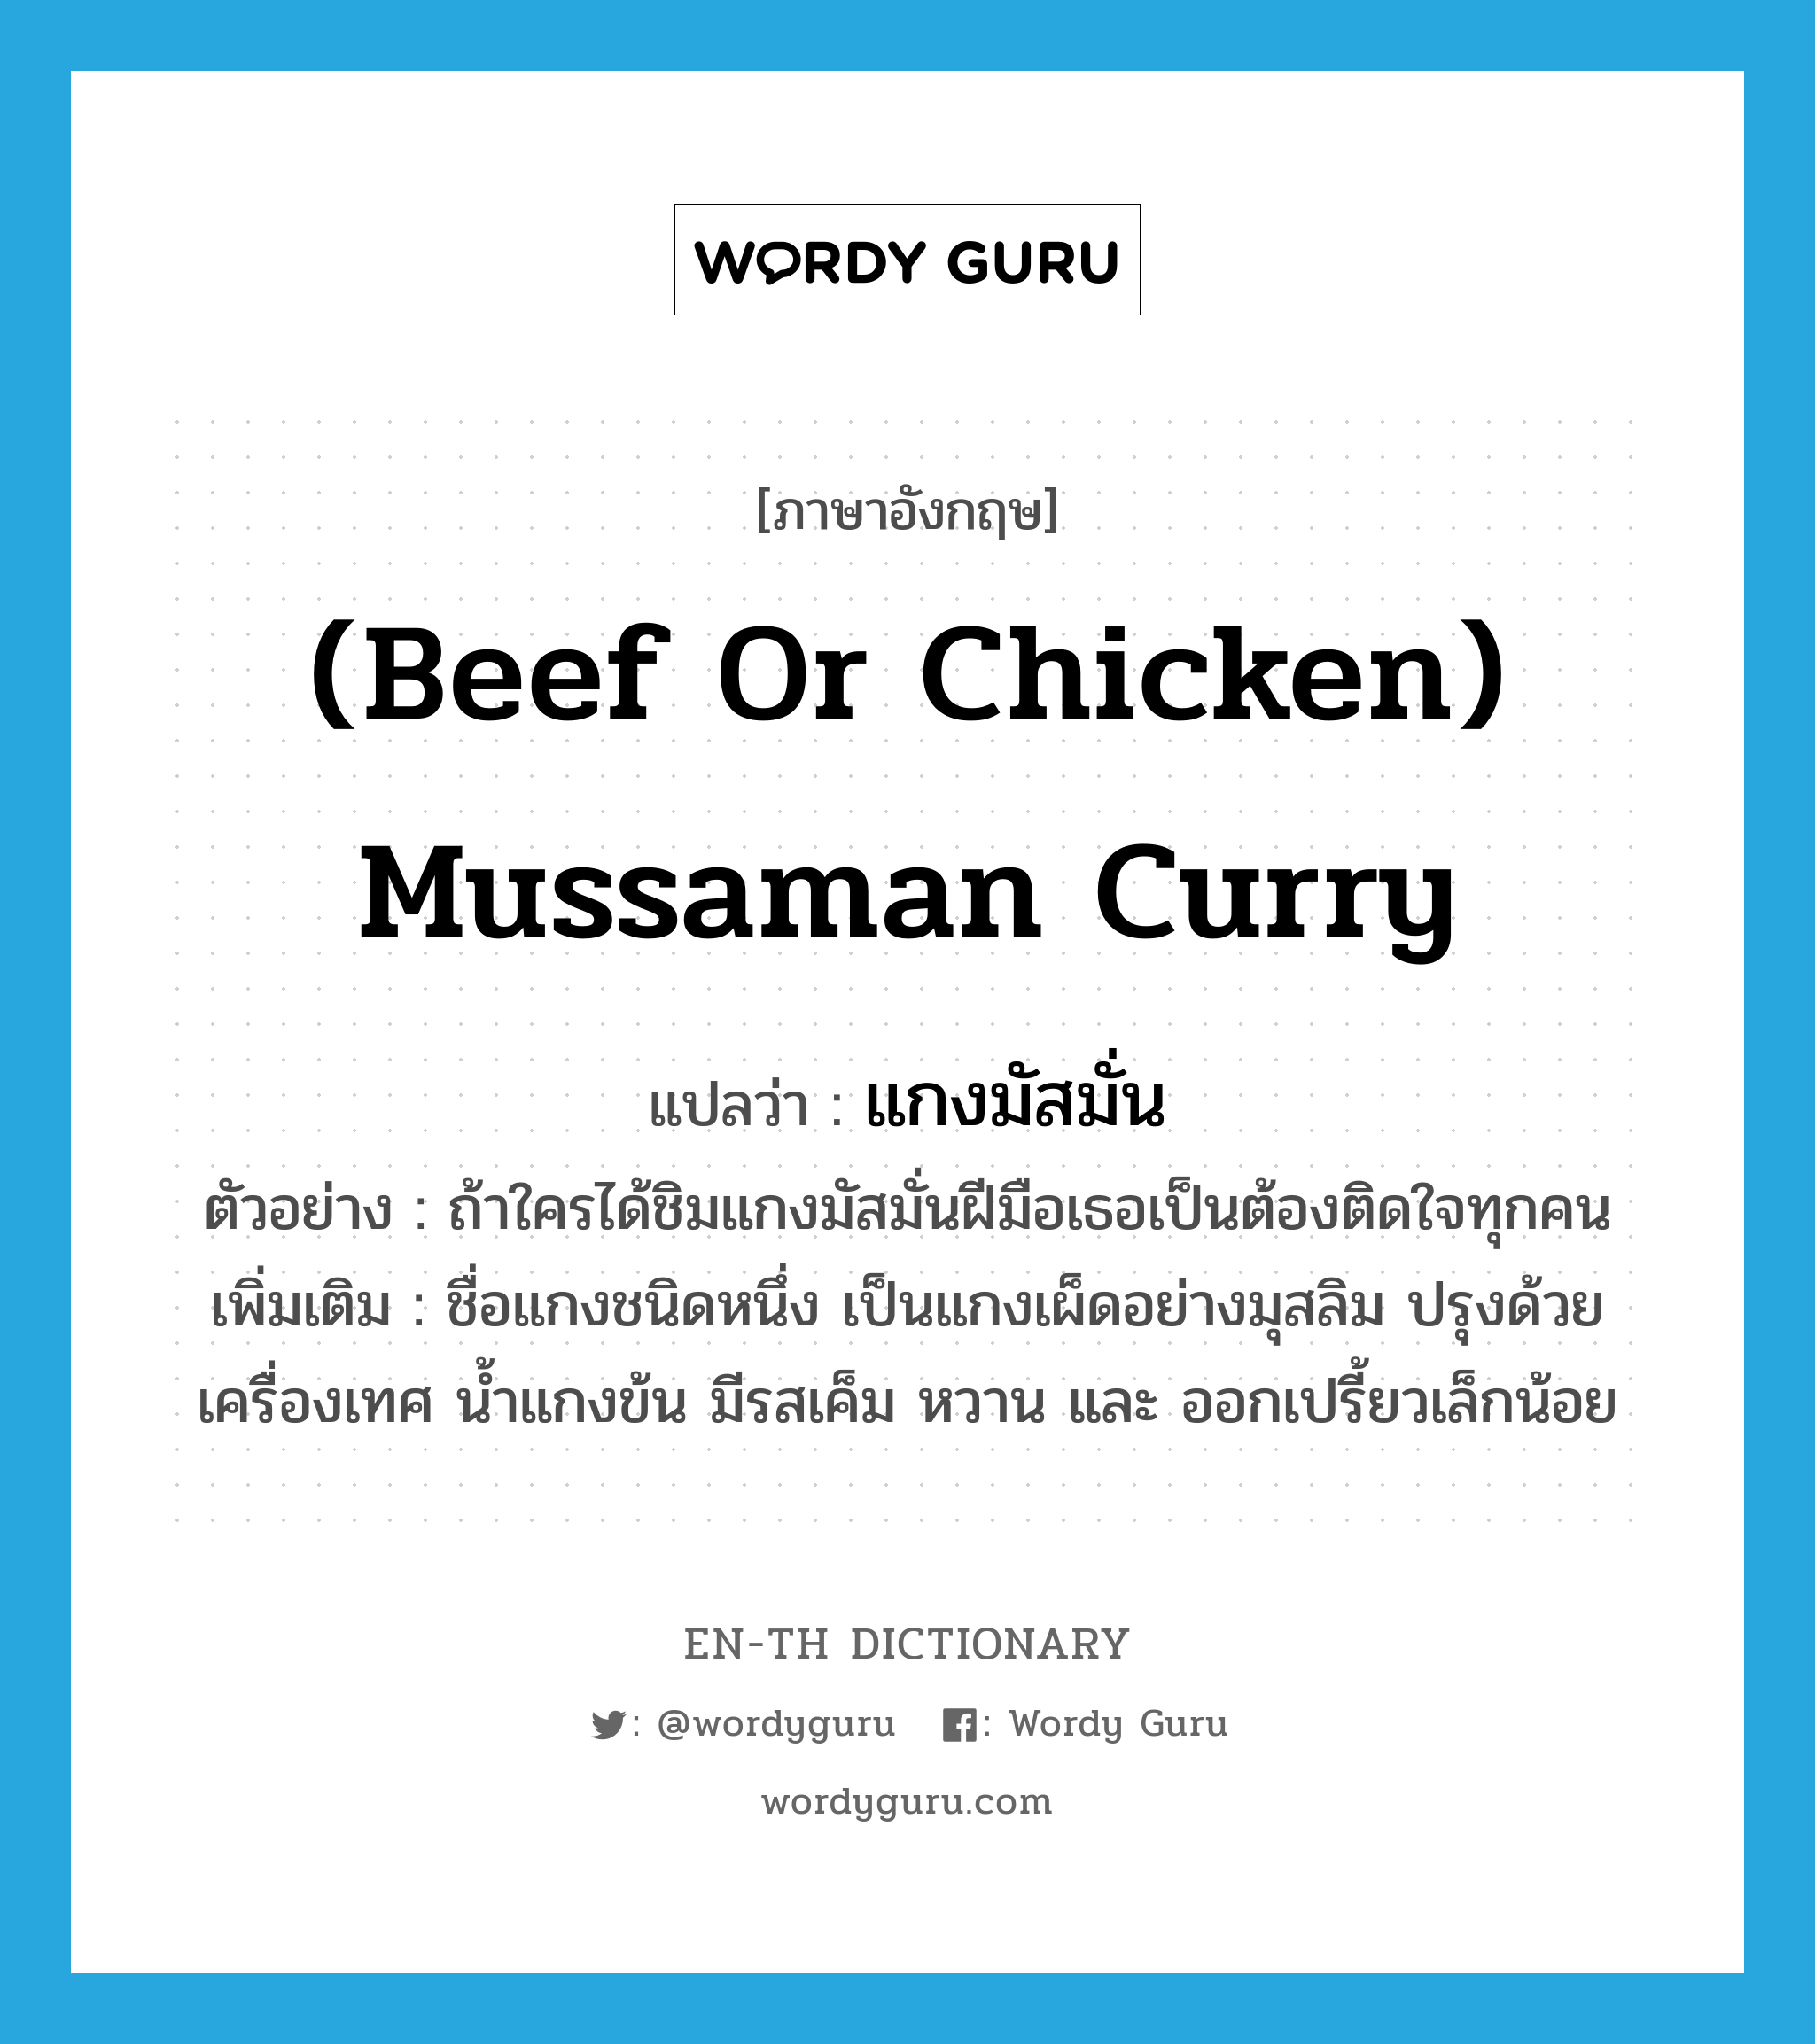 (beef or chicken) mussaman curry แปลว่า?, คำศัพท์ภาษาอังกฤษ (beef or chicken) mussaman curry แปลว่า แกงมัสมั่น ประเภท N ตัวอย่าง ถ้าใครได้ชิมแกงมัสมั่นฝีมือเธอเป็นต้องติดใจทุกคน เพิ่มเติม ชื่อแกงชนิดหนึ่ง เป็นแกงเผ็ดอย่างมุสลิม ปรุงด้วยเครื่องเทศ น้ำแกงข้น มีรสเค็ม หวาน และ ออกเปรี้ยวเล็กน้อย หมวด N